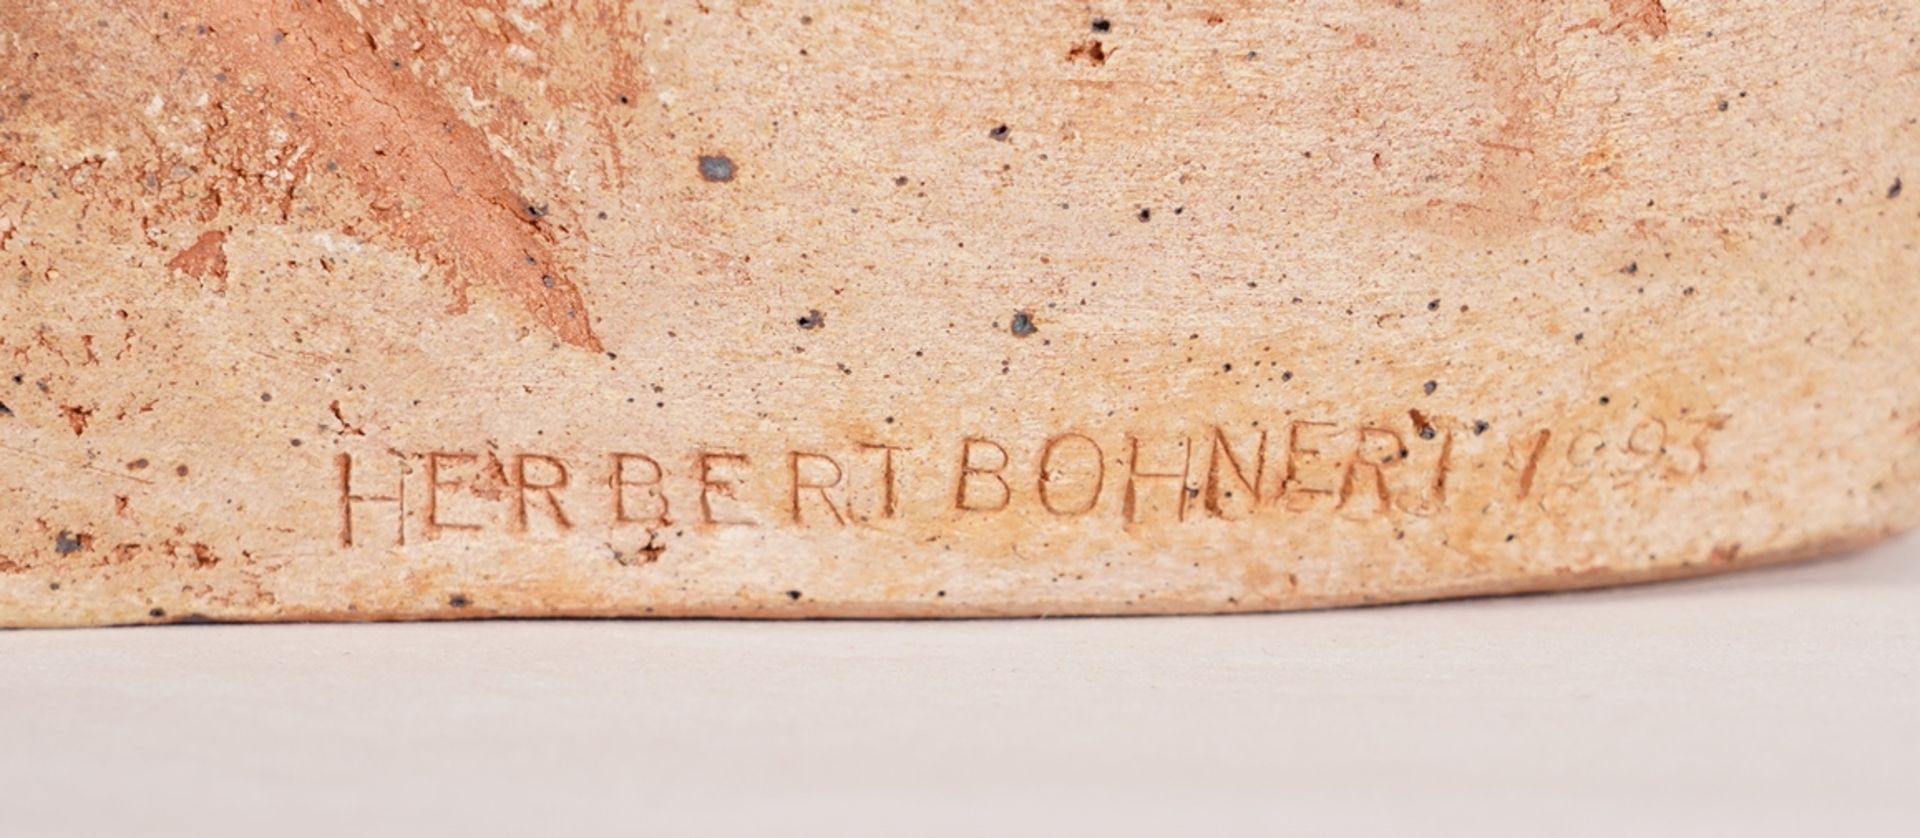 Bohnert, Herbert - Image 3 of 4